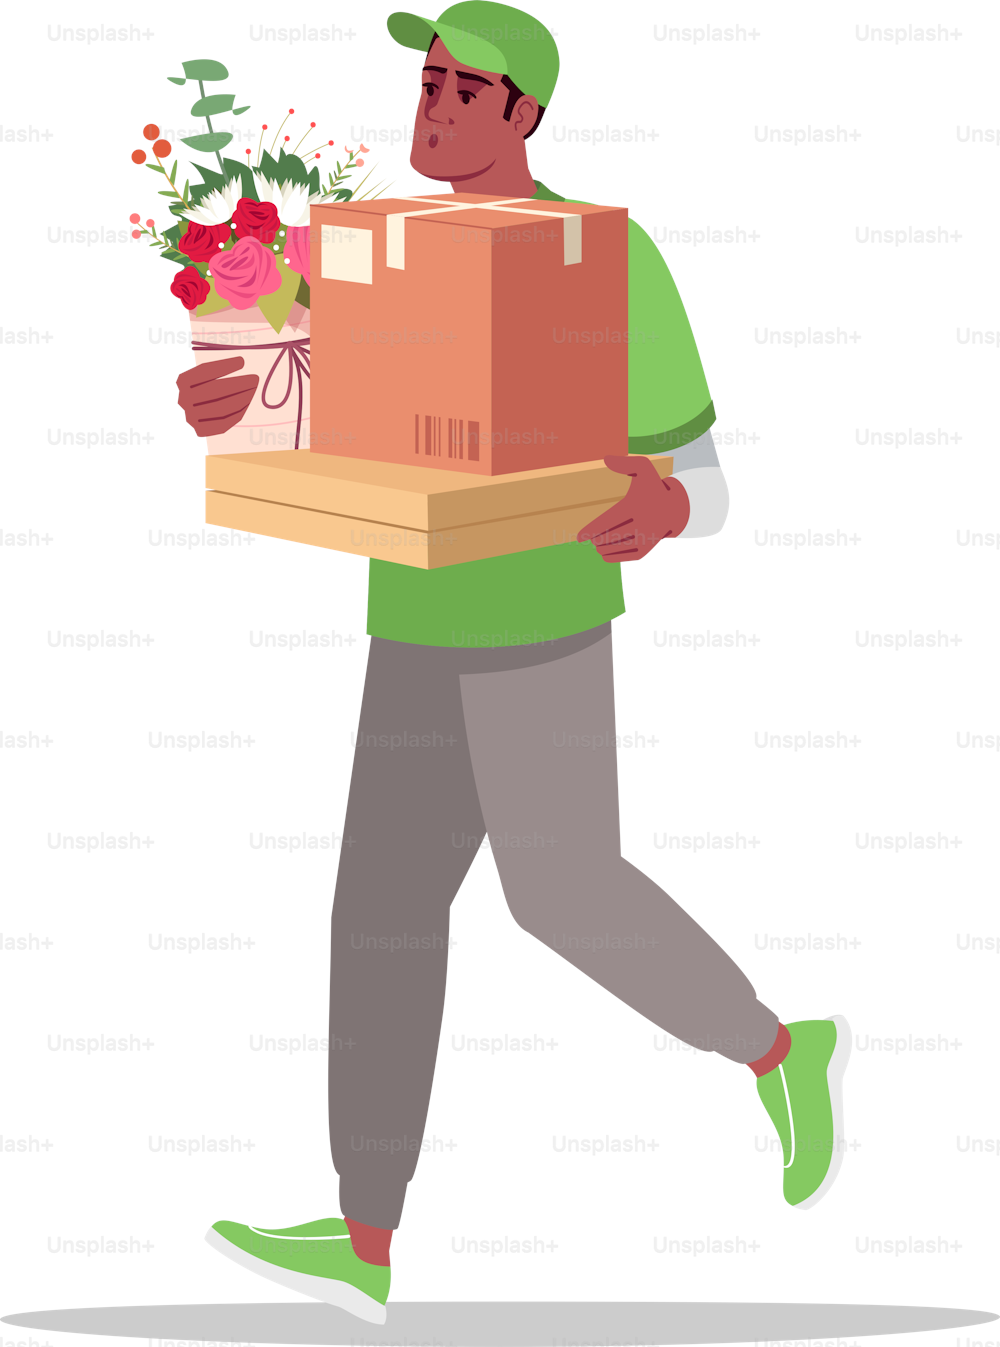 Illustration vectorielle couleur RVB semi-plate à domicile spéciale. Les livreurs transportent un bouquet de fleurs et une boîte en carton. Messager africain isolé personnage de bande dessinée sur fond blanc